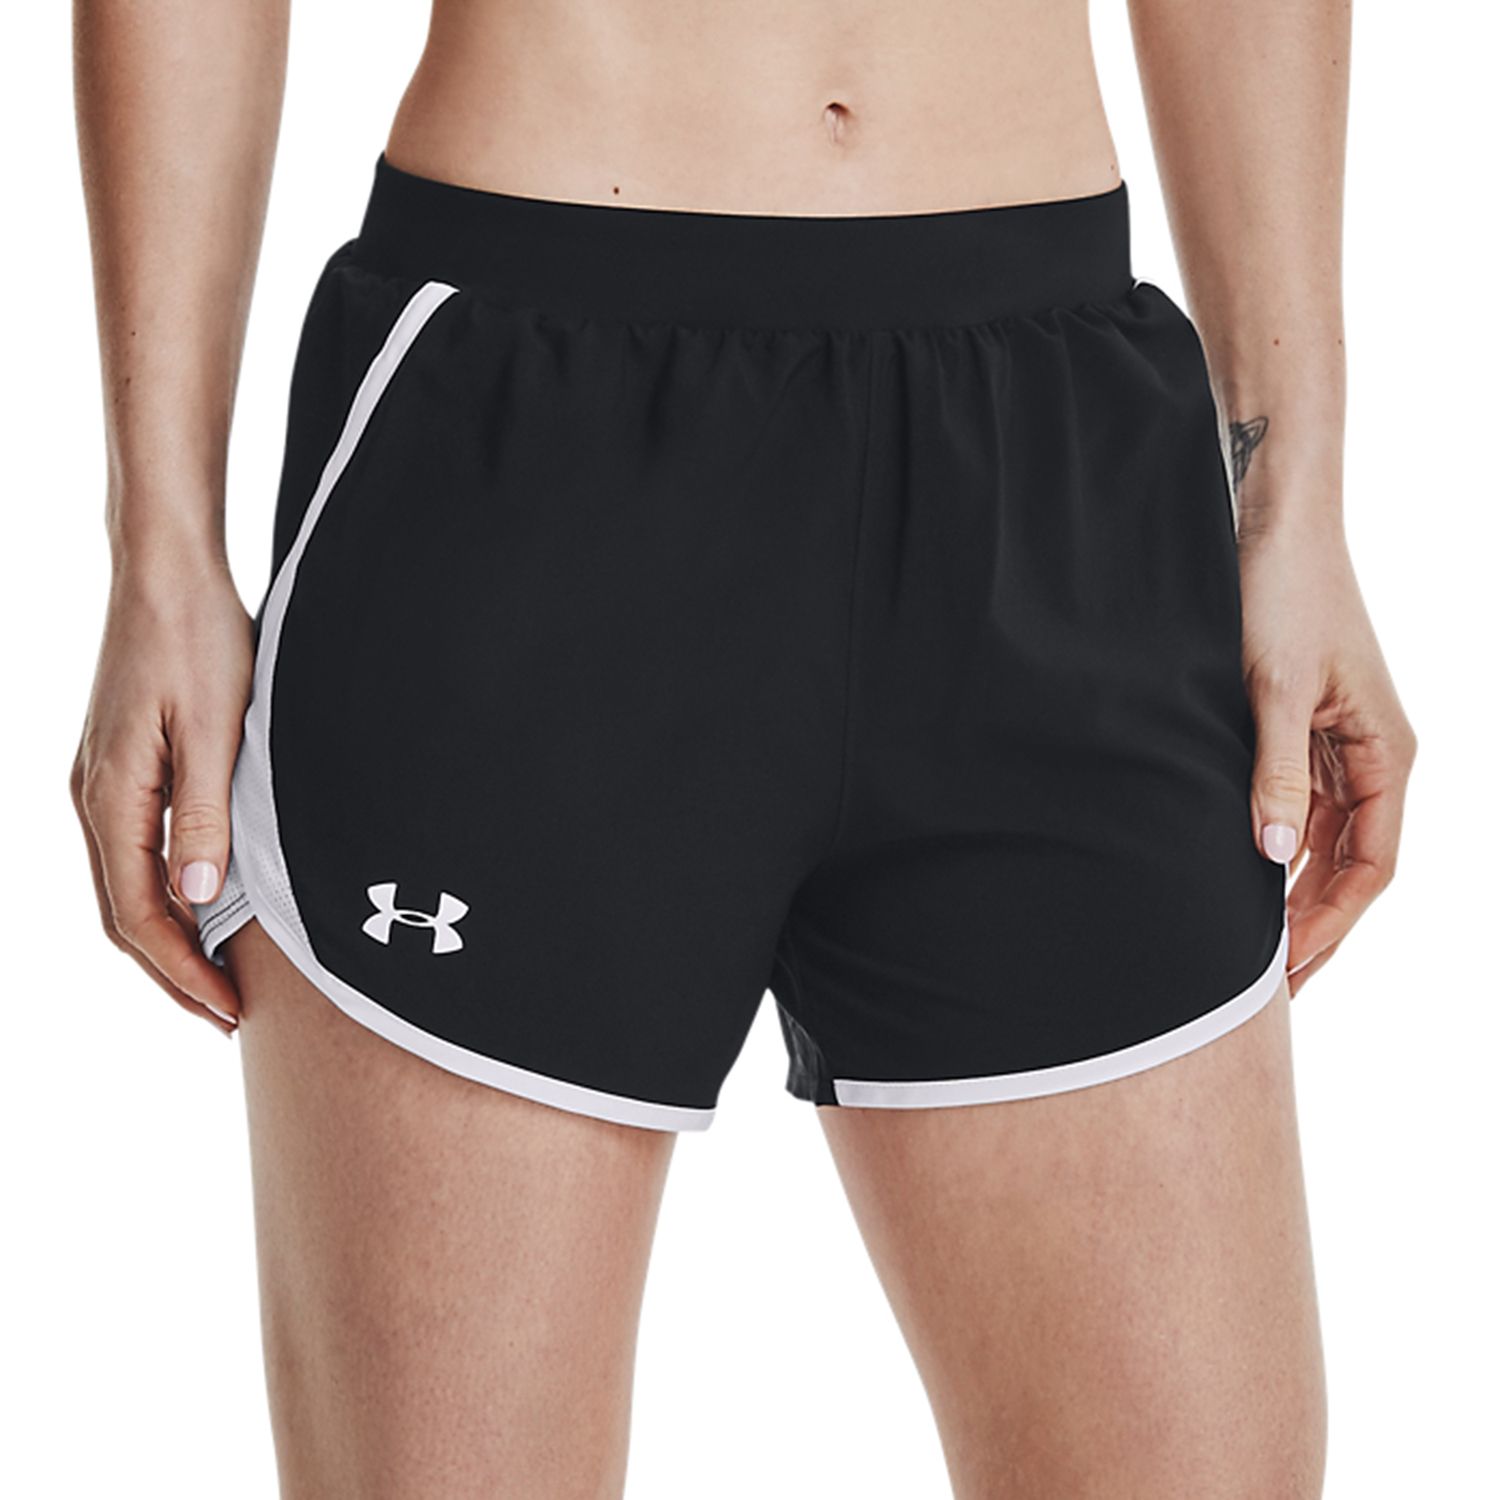 under shorts for running